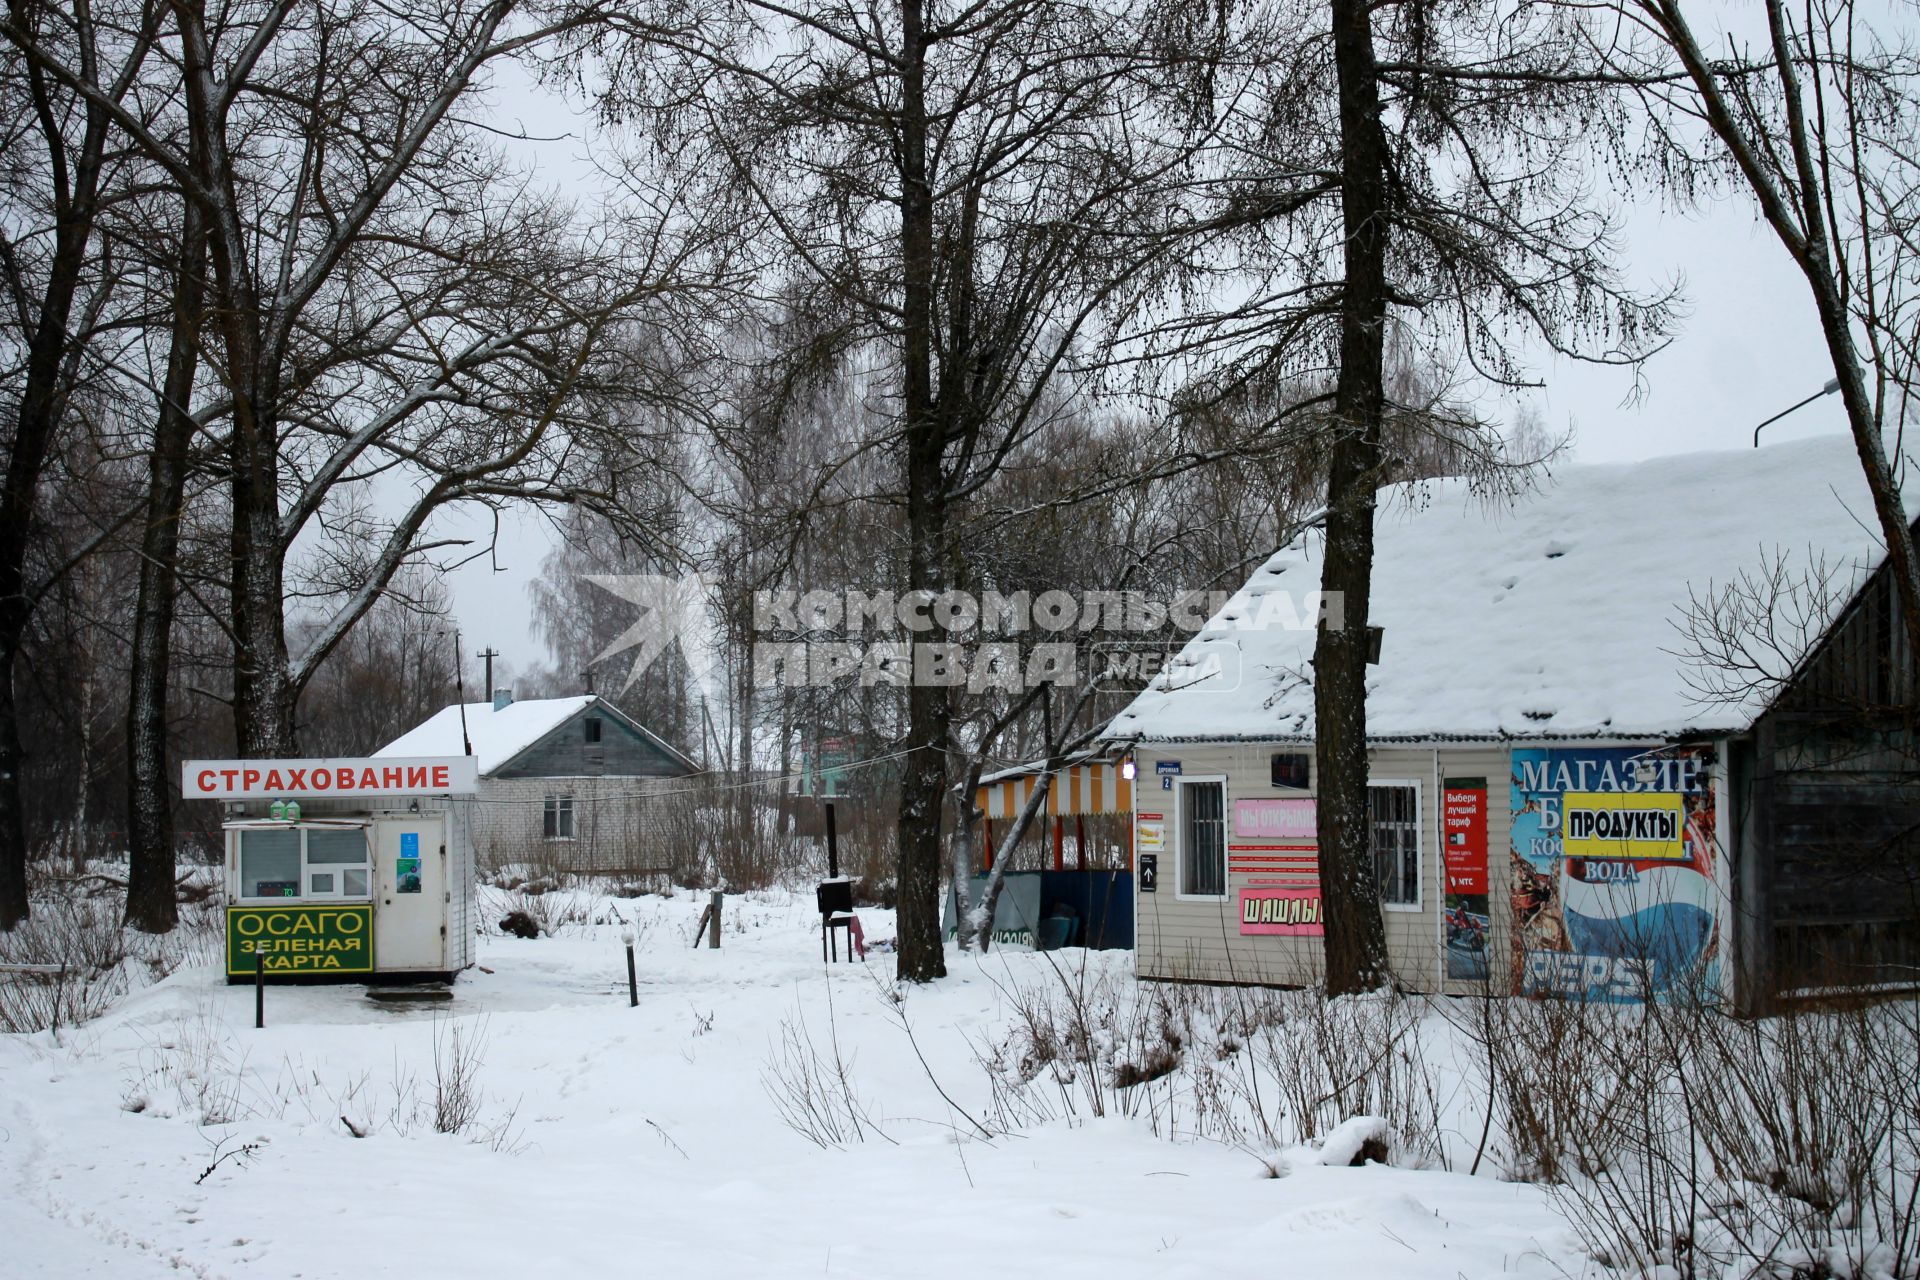 Смоленская область. Российско-белорусская граница на трассе М1/Е30 Москва - Смоленск - Минск.